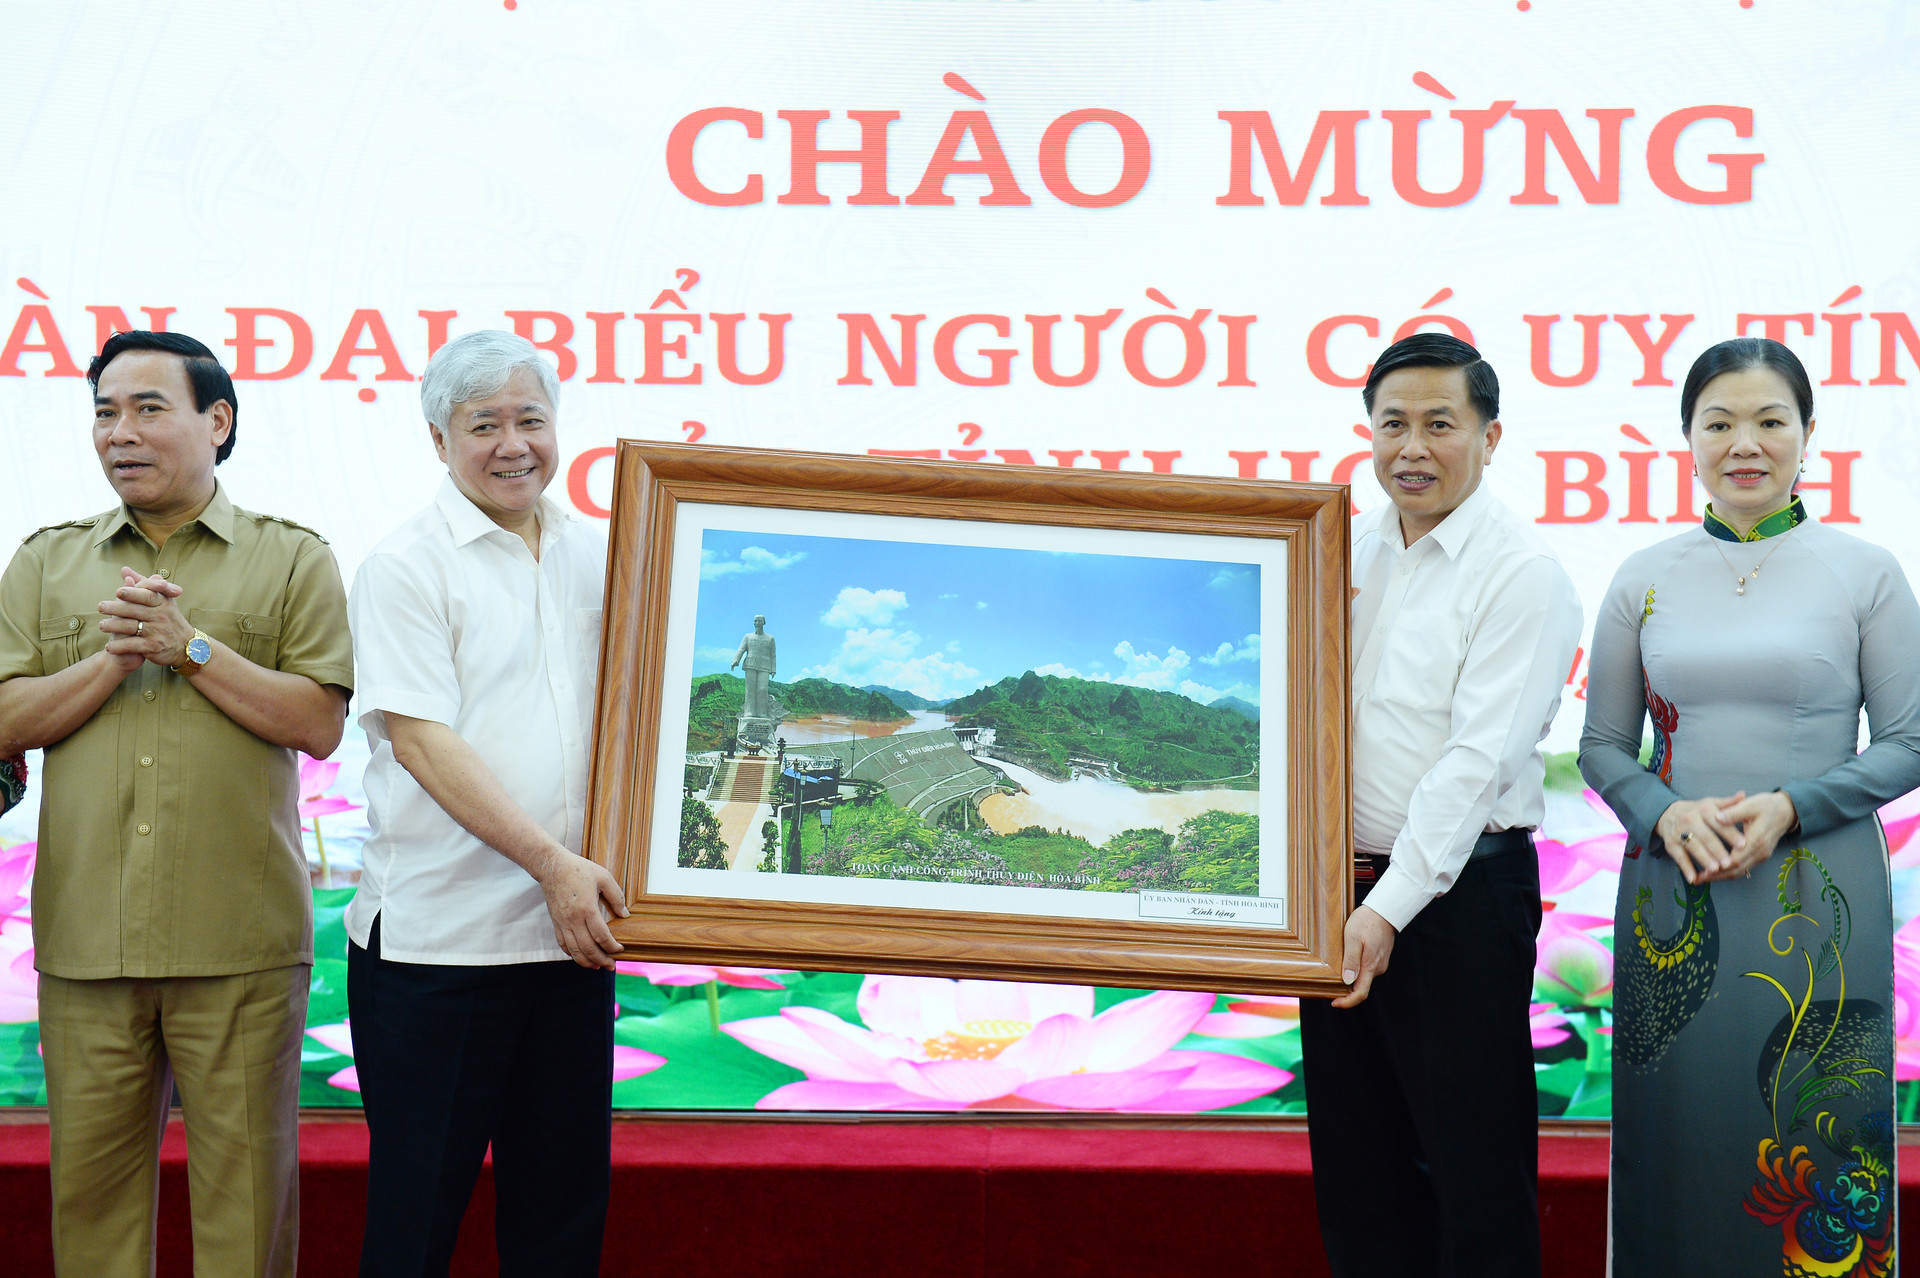 Đoàn đại biểu người uy tín tỉnh Hòa Bình cũng đã trao tặng Ủy ban Trung ương MTTQ Việt Nam bức tranh về văn hóa các dân tộc trên địa bàn tỉnh.